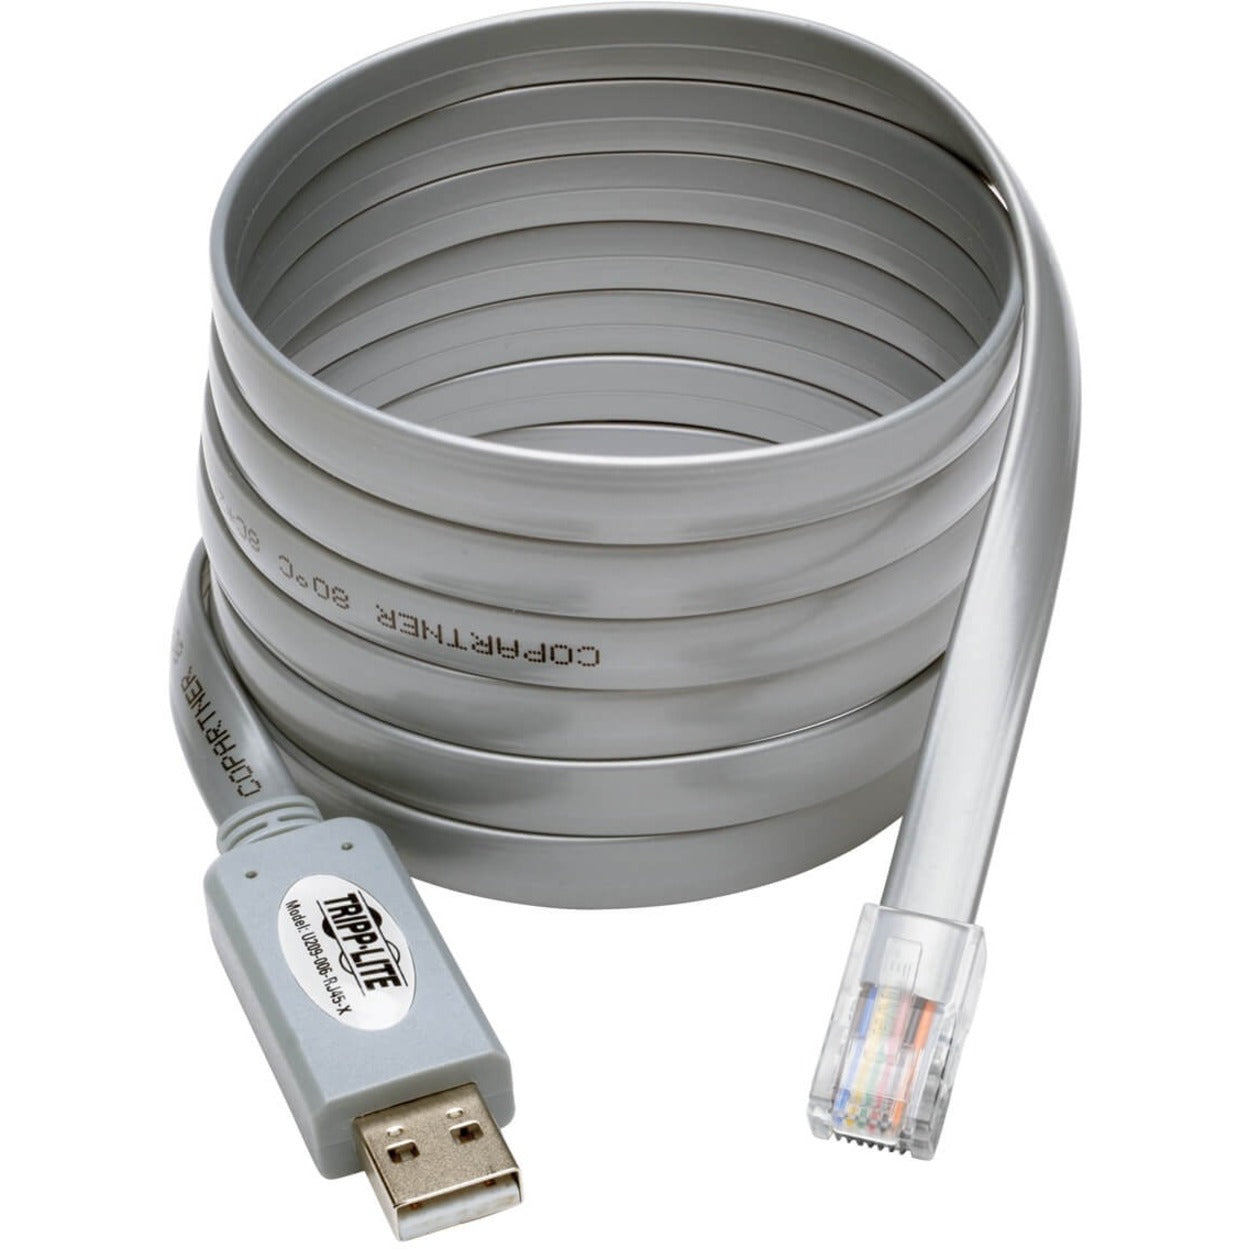 تريب لايت كبل تريب لايت U209-006-RJ45-X USB إلى RJ45 سيسكو الكابل الرول اوفر، USB نوع-A إلى RJ45 M/M، 6 قدم، حماية ضد التداخل الكهرومغناطيسي، حماية ضد التشويش الكهرومغناطيسي